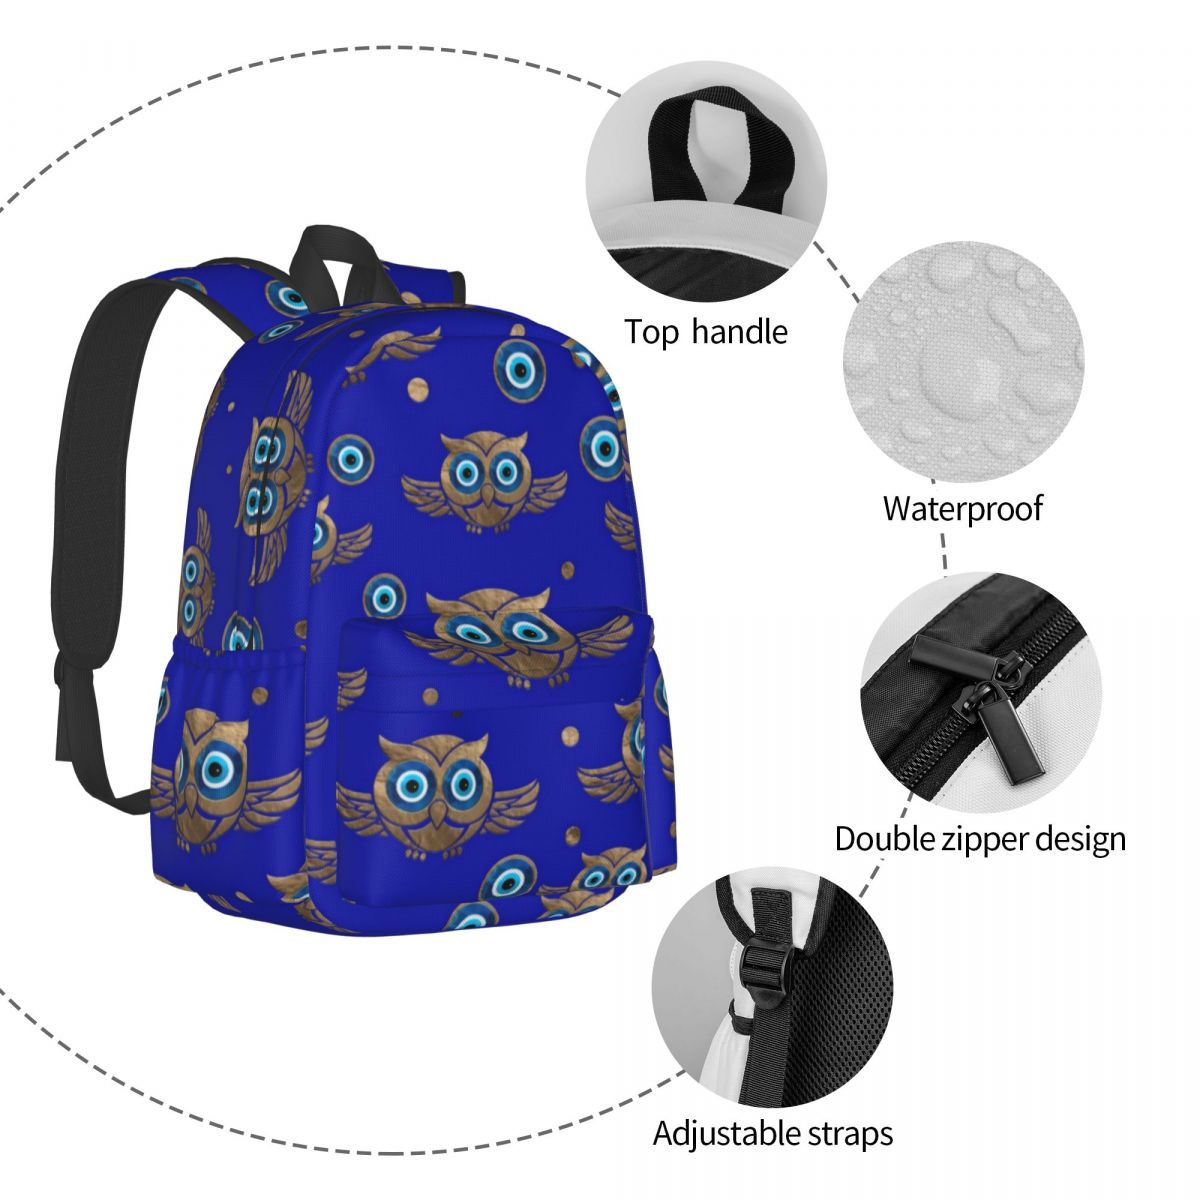 Owl Print Evil Eye Bags